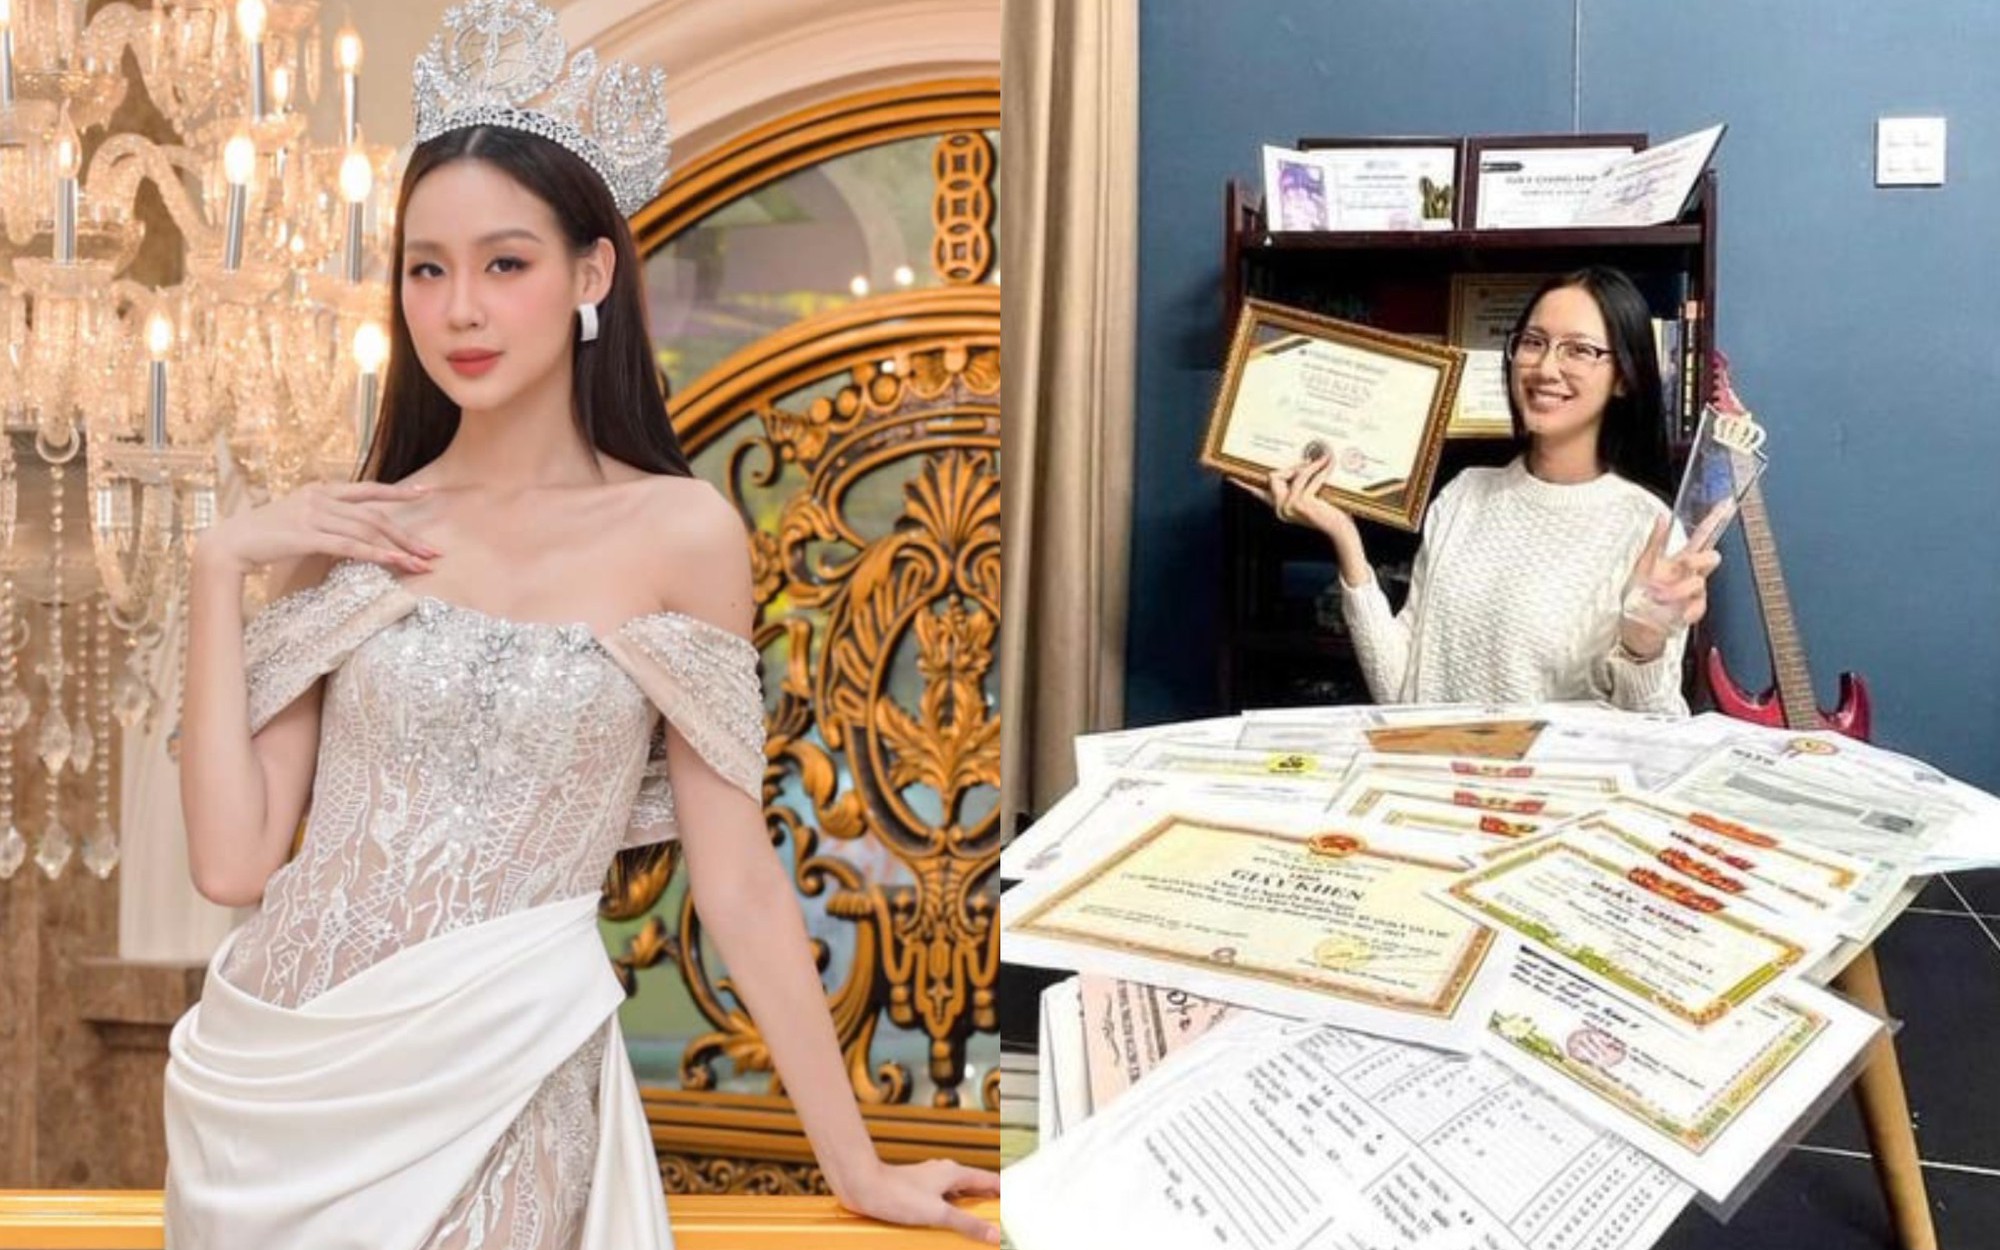 Hoa hậu Bảo Ngọc: "Tôi săn học bổng không phải vì cái danh"